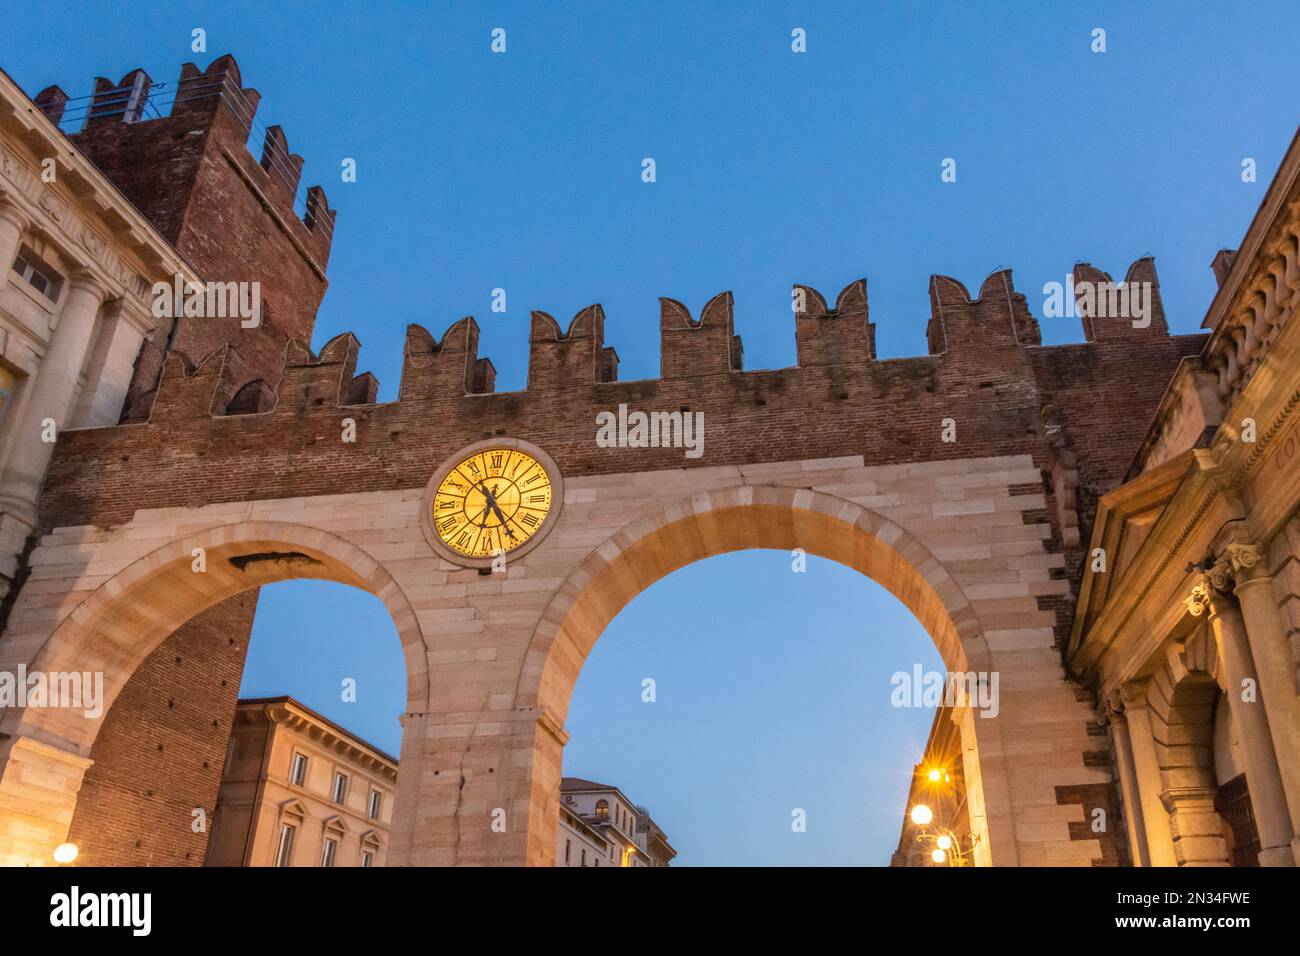 Entrée médiévale de la ville historique de Vérone - arches de la porte de la ville - région de Vénétie dans le nord de l'Italie, en Europe Banque D'Images